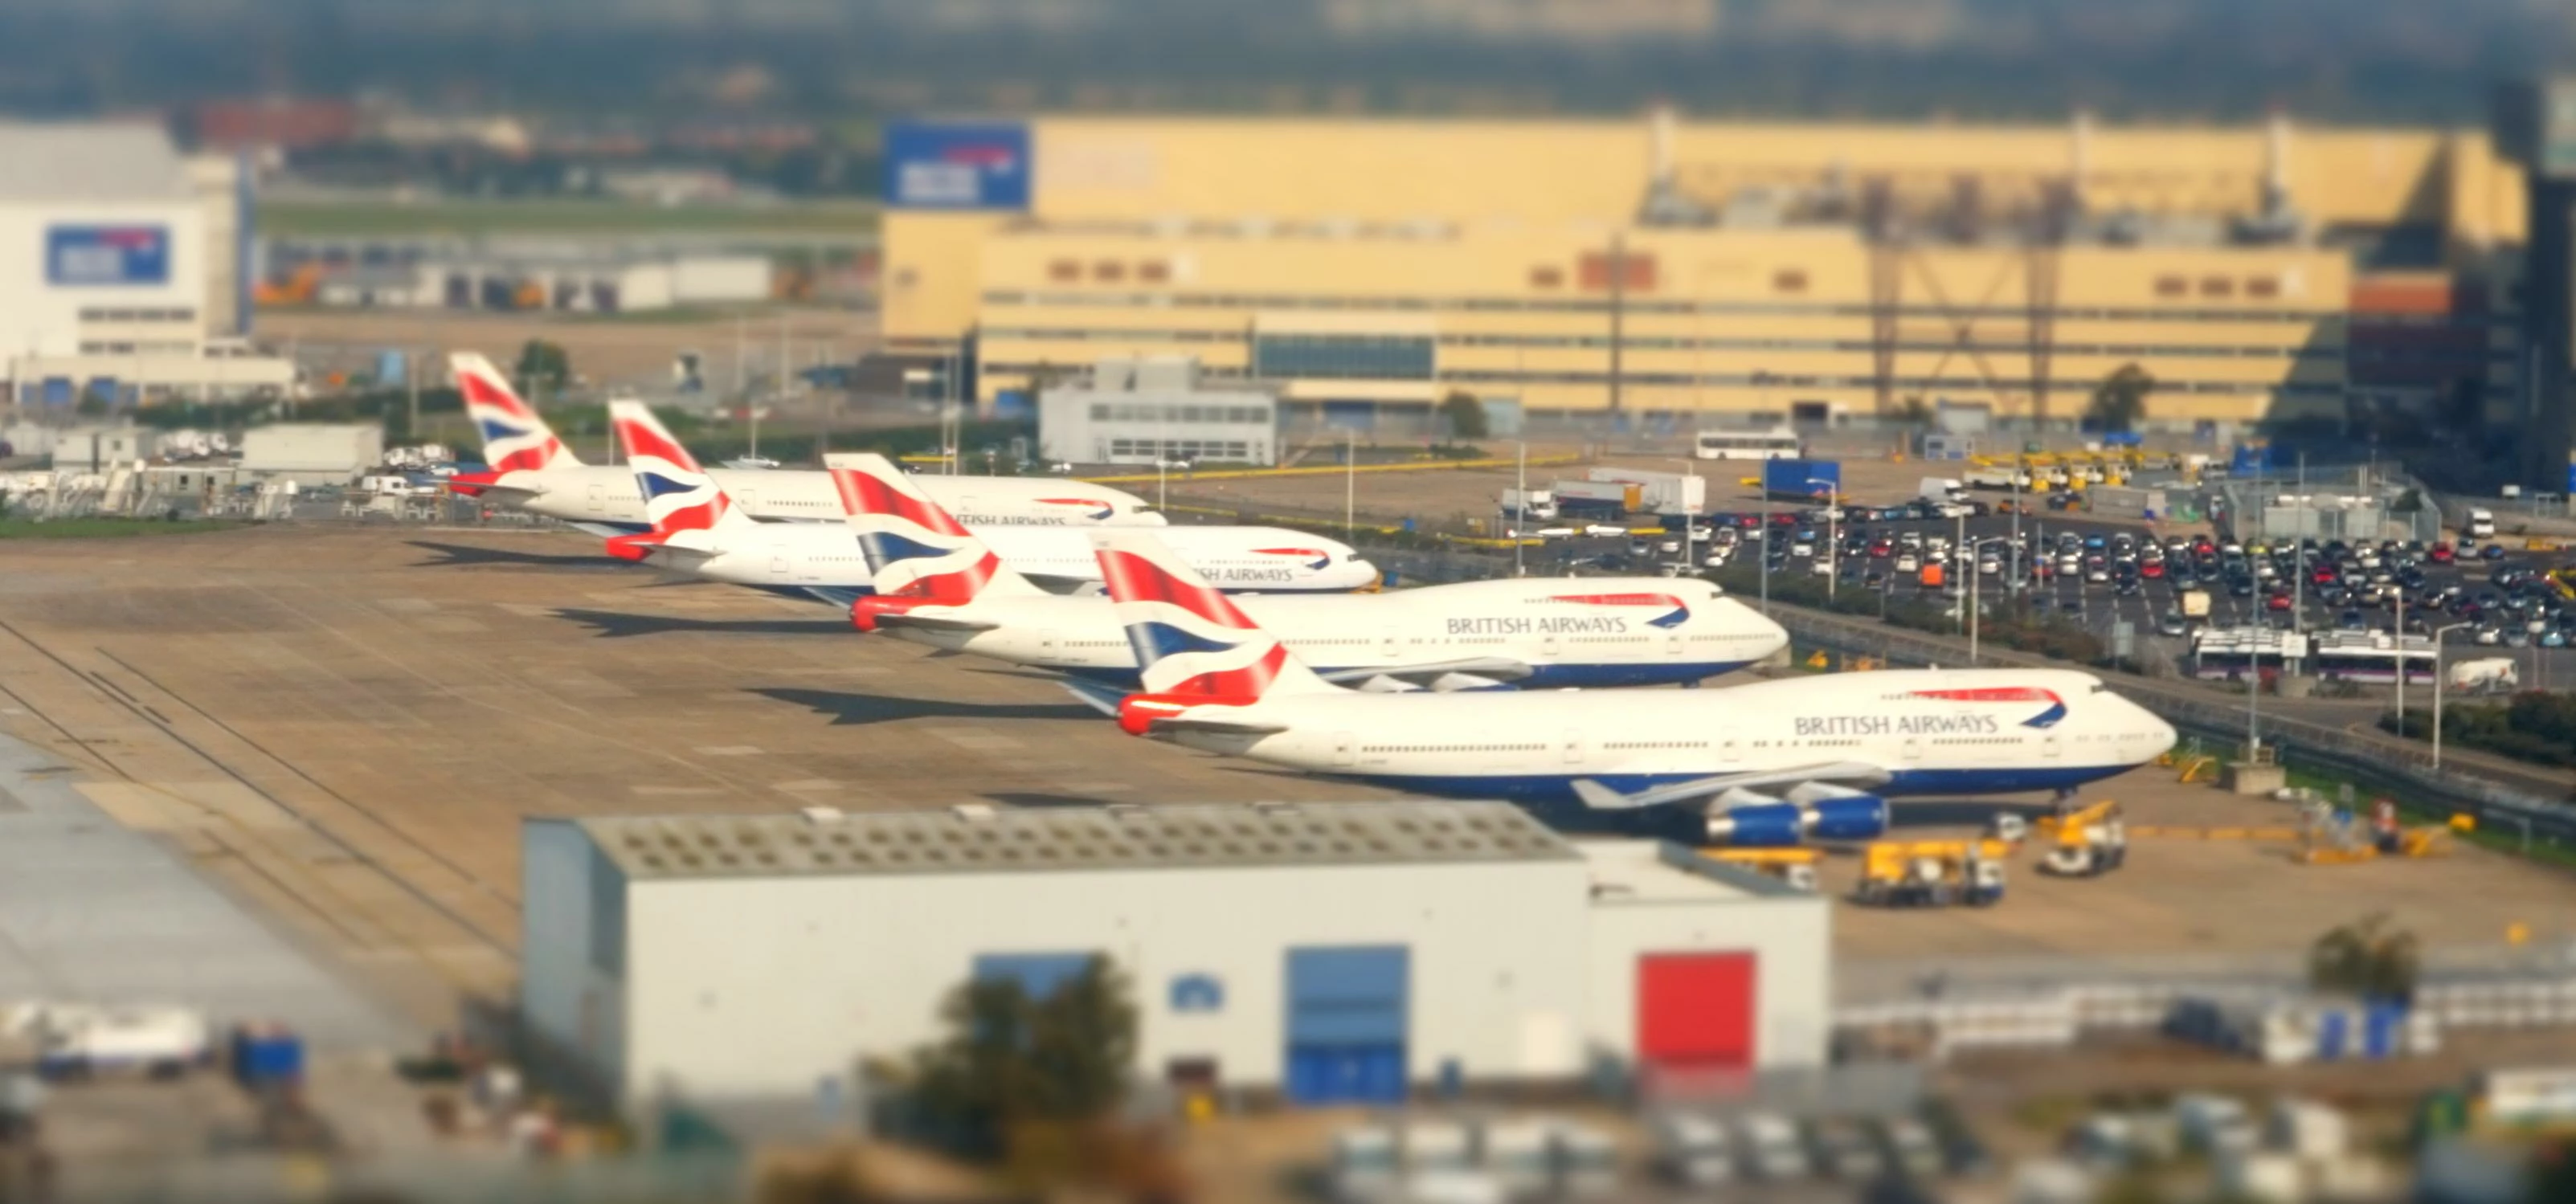 British Airways planes at London Heathrow airport